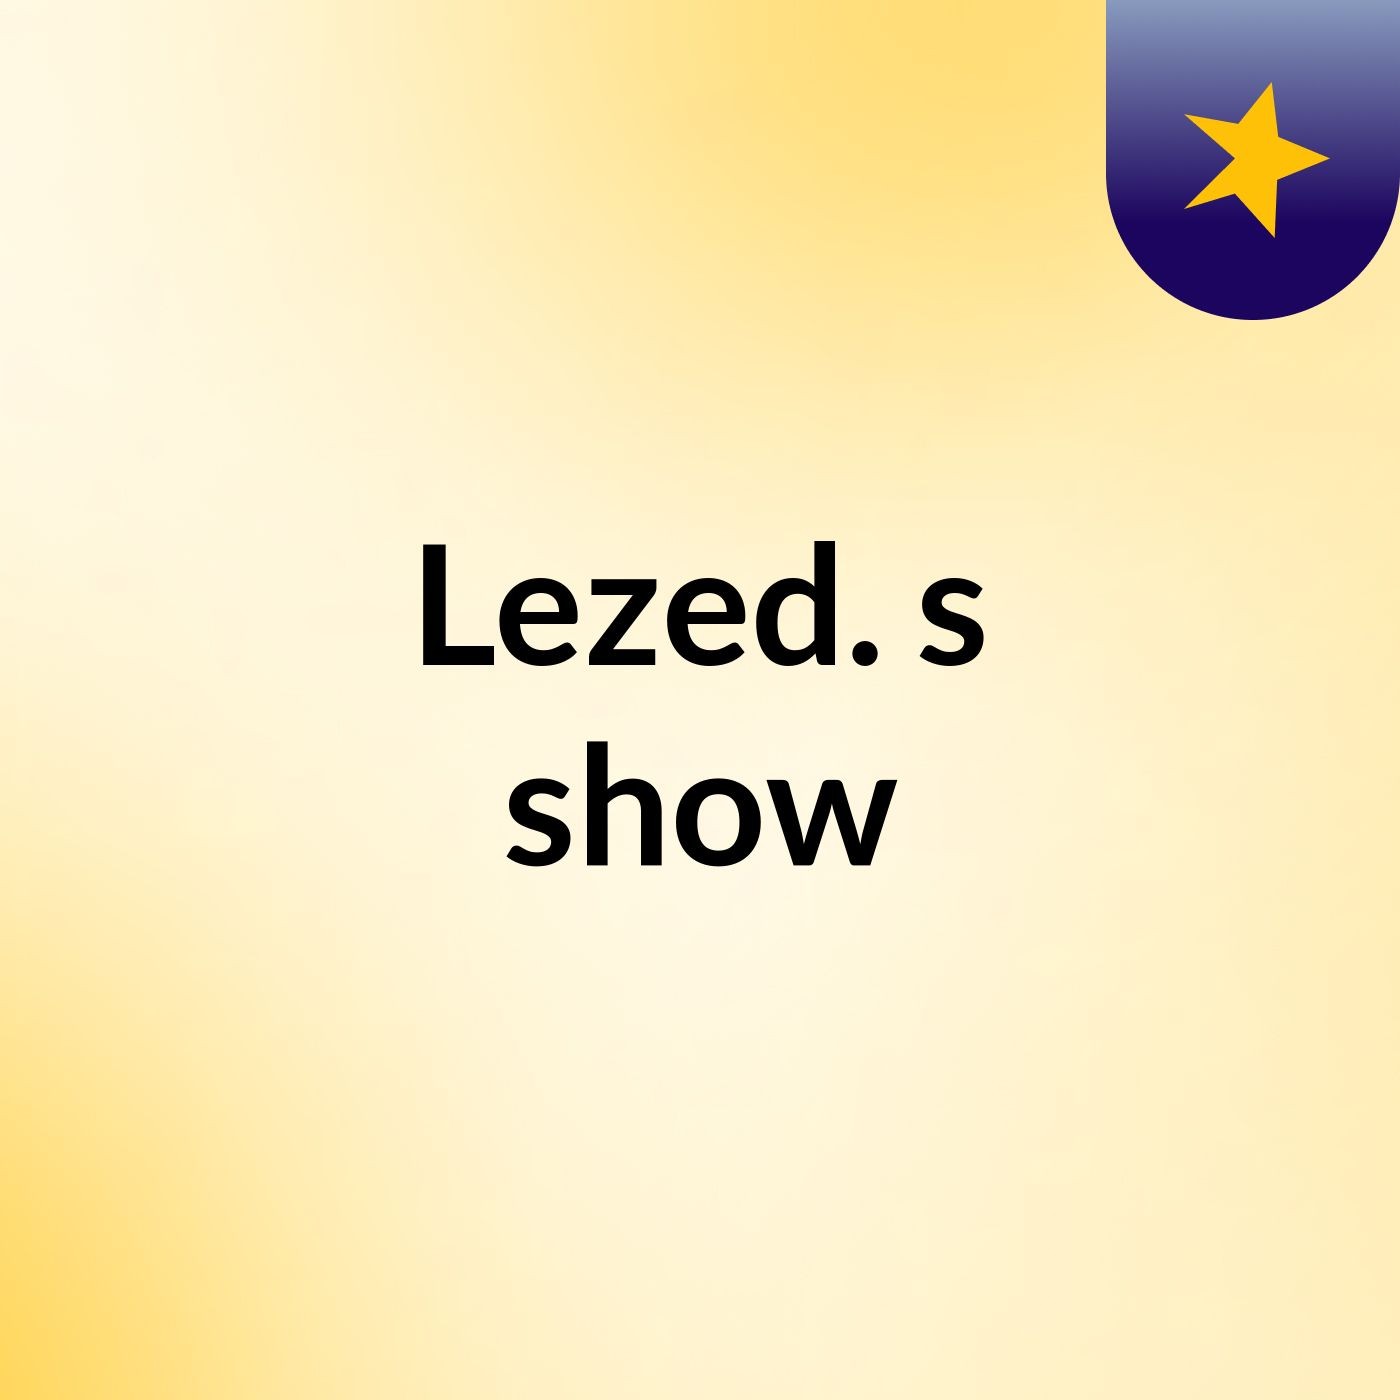 Lezed.'s show